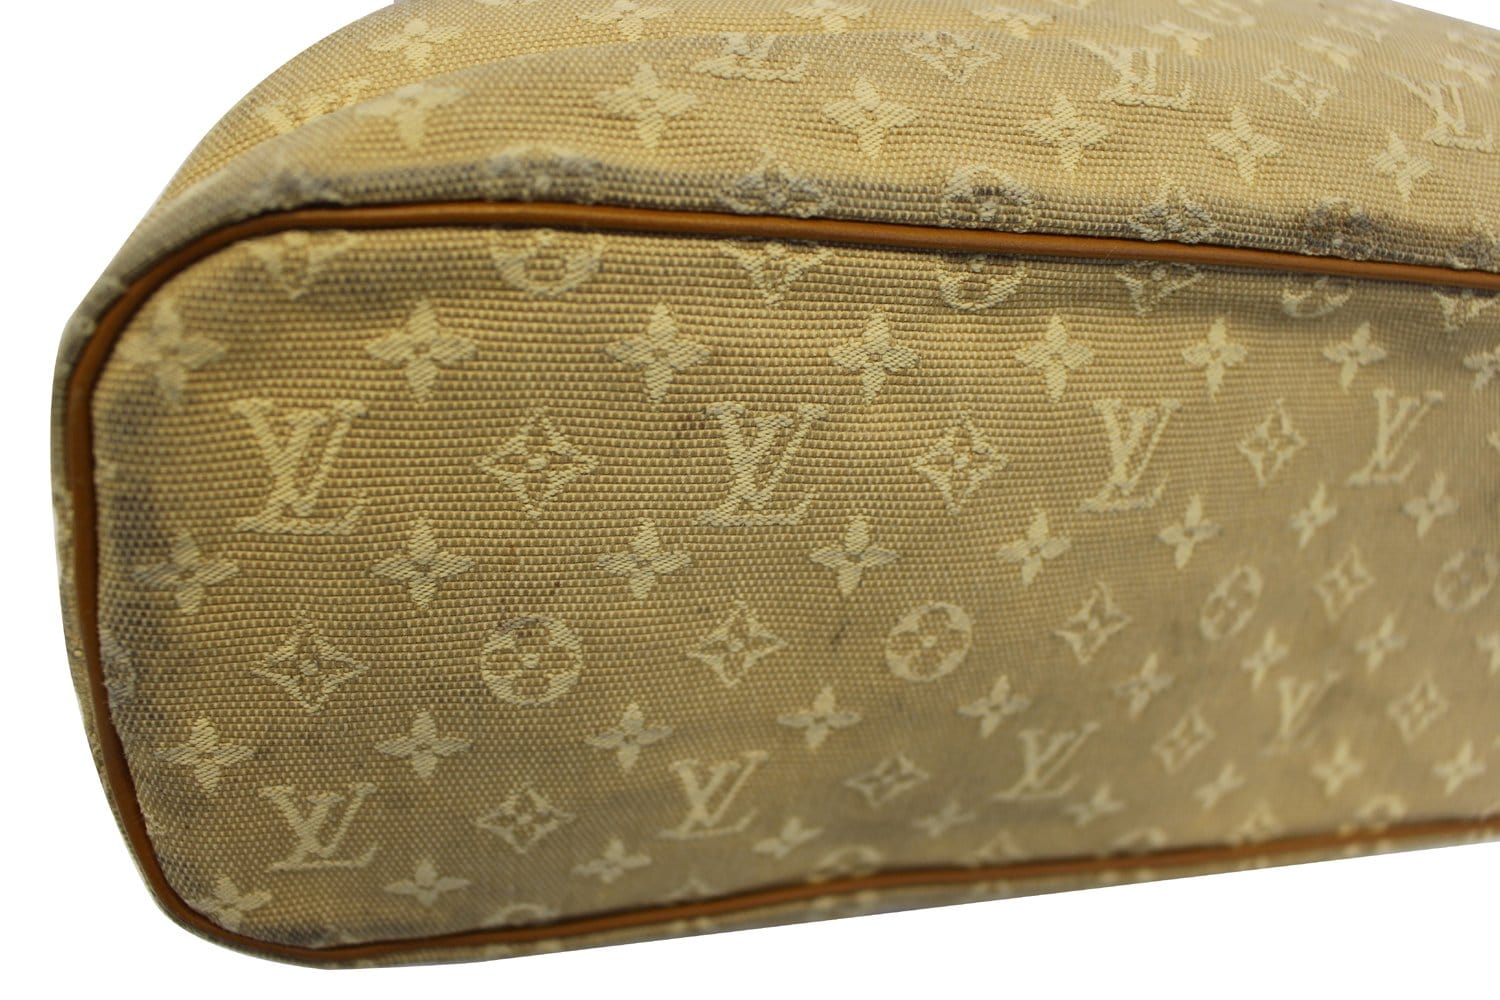 Linen handbag Louis Vuitton Beige in Linen - 35306529